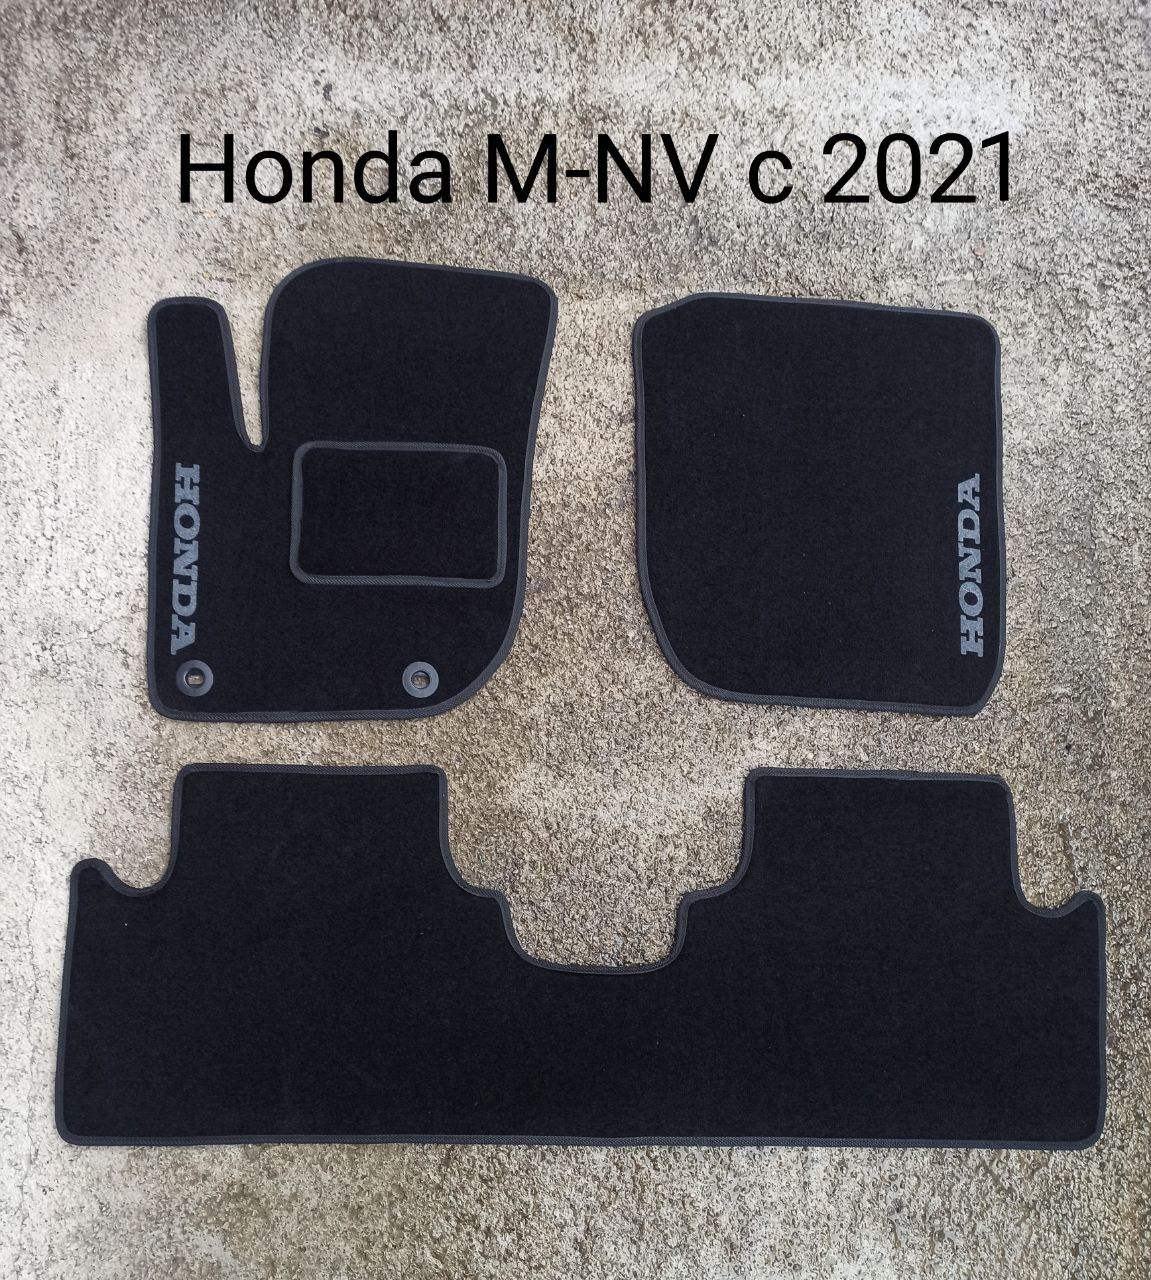 В наявності автомобільні коврики Honda M-NV c 2021